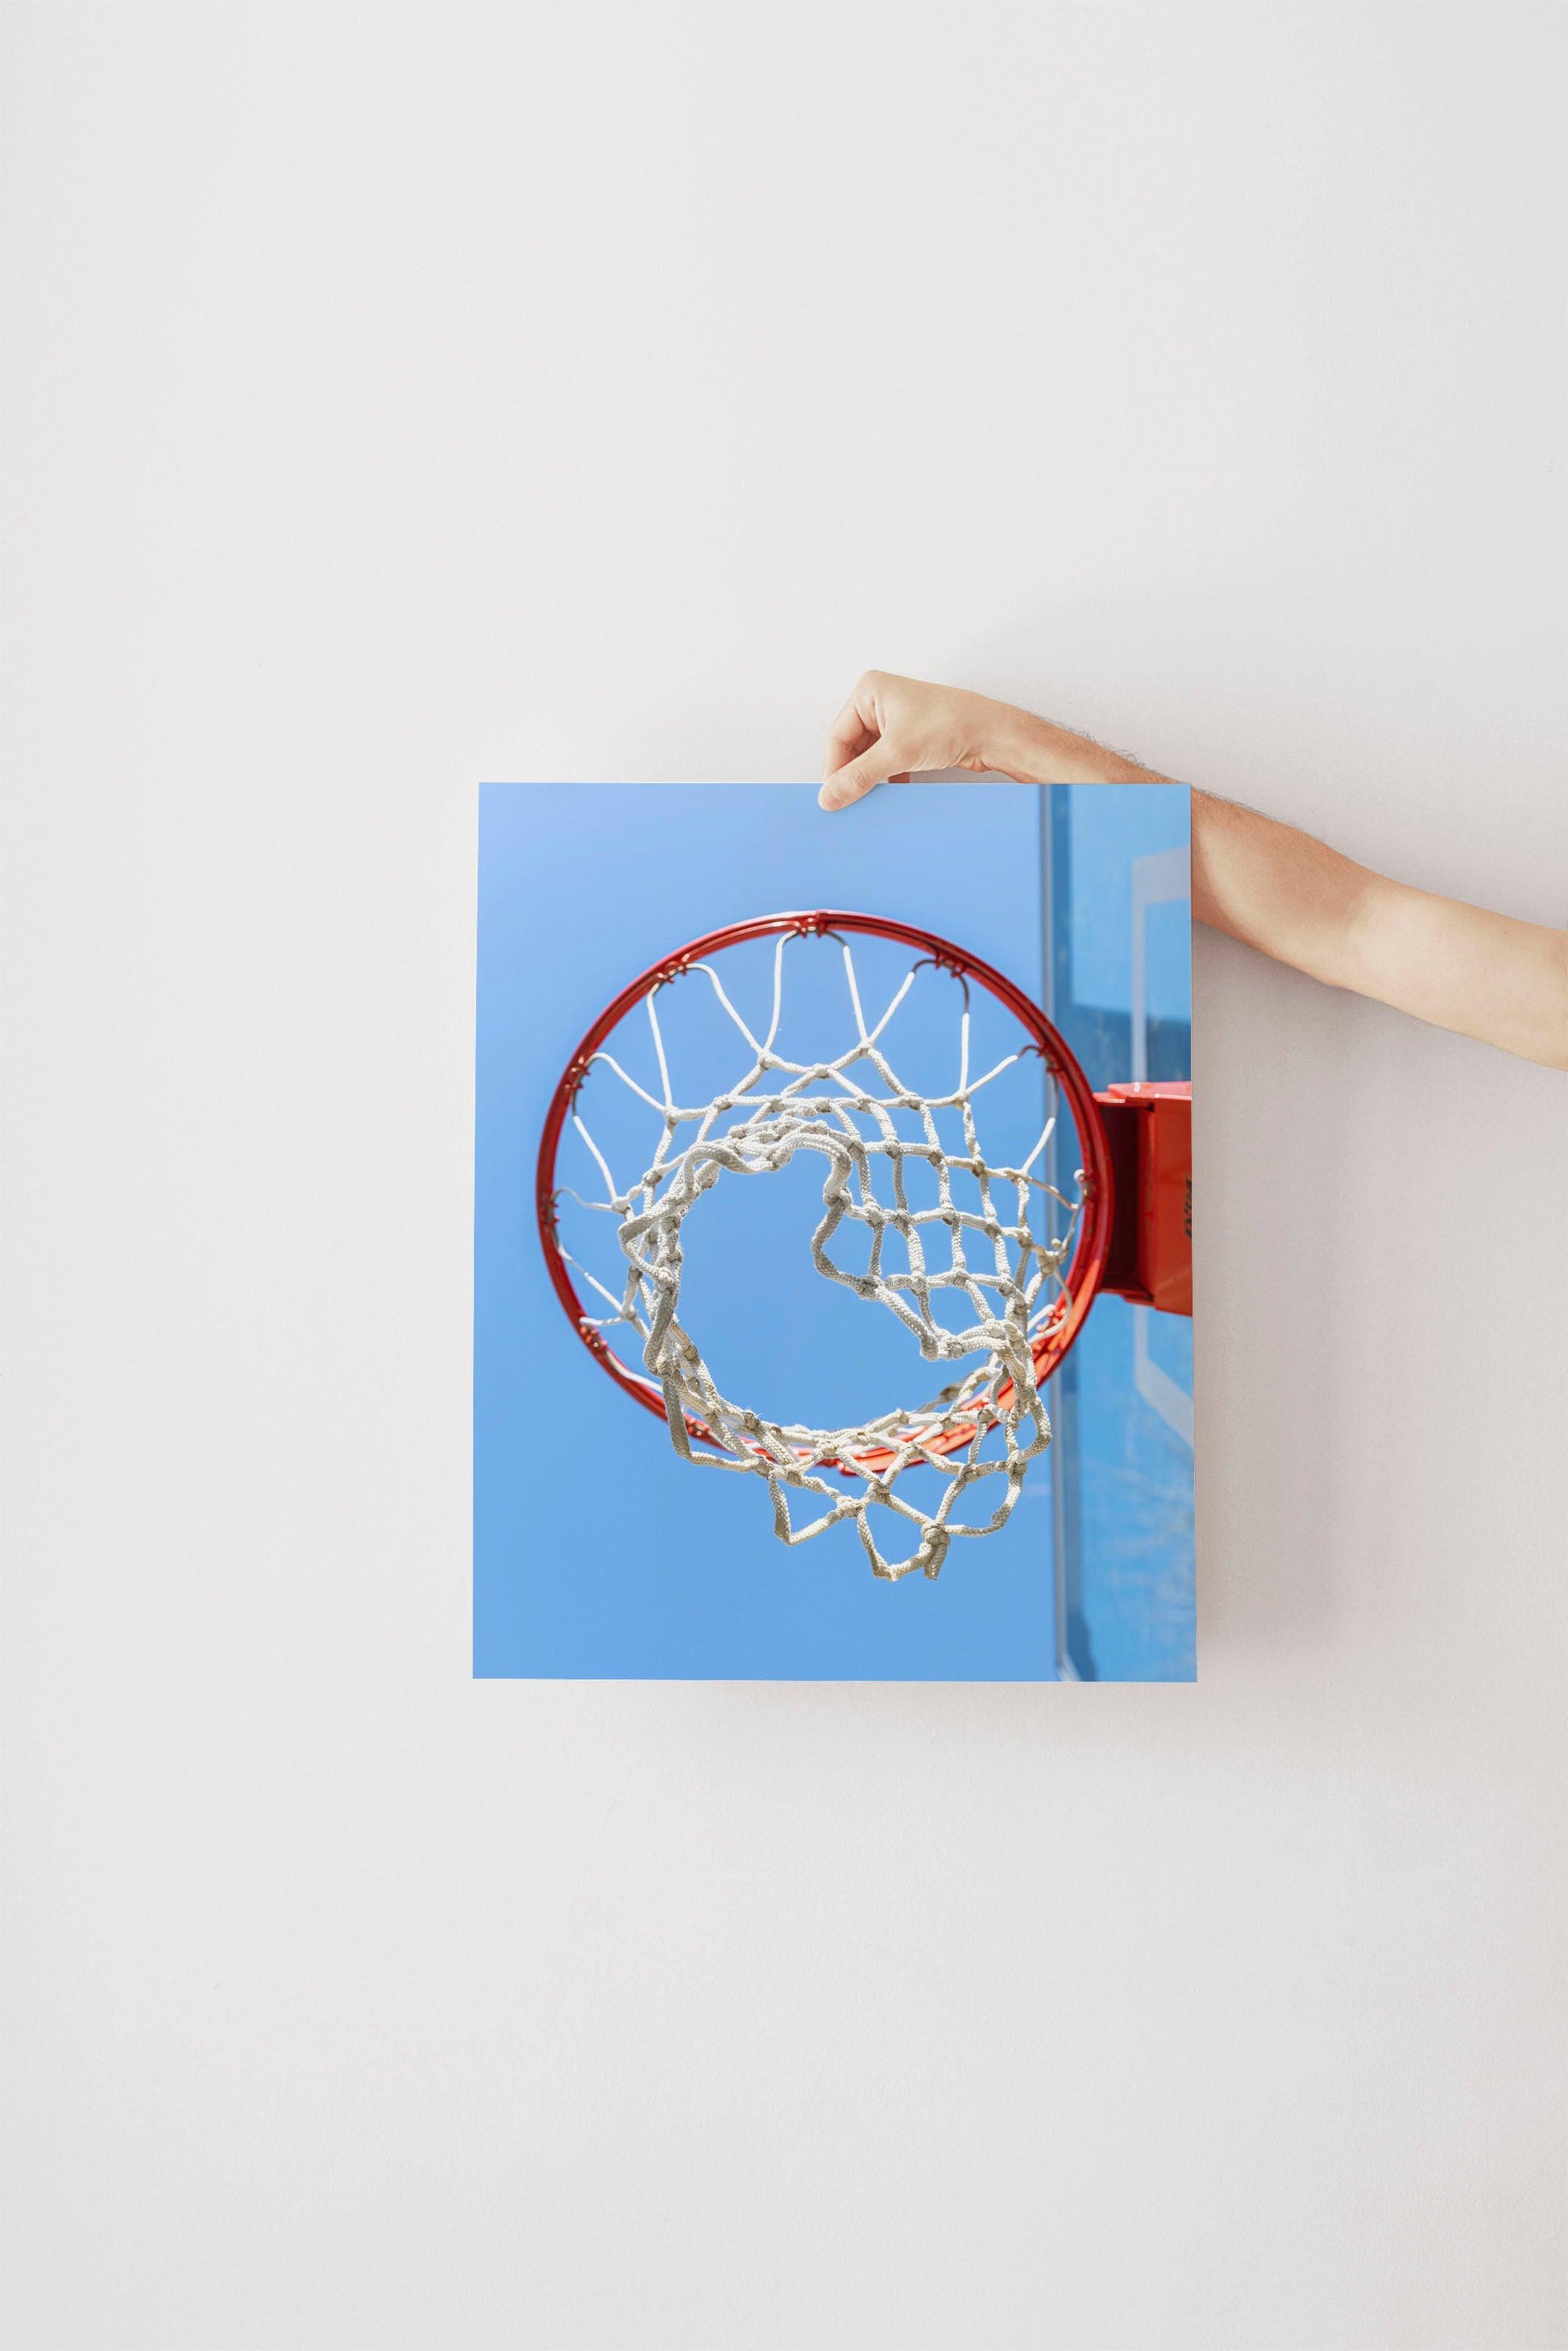 Basketball Hoop Print - Departures Print Shop